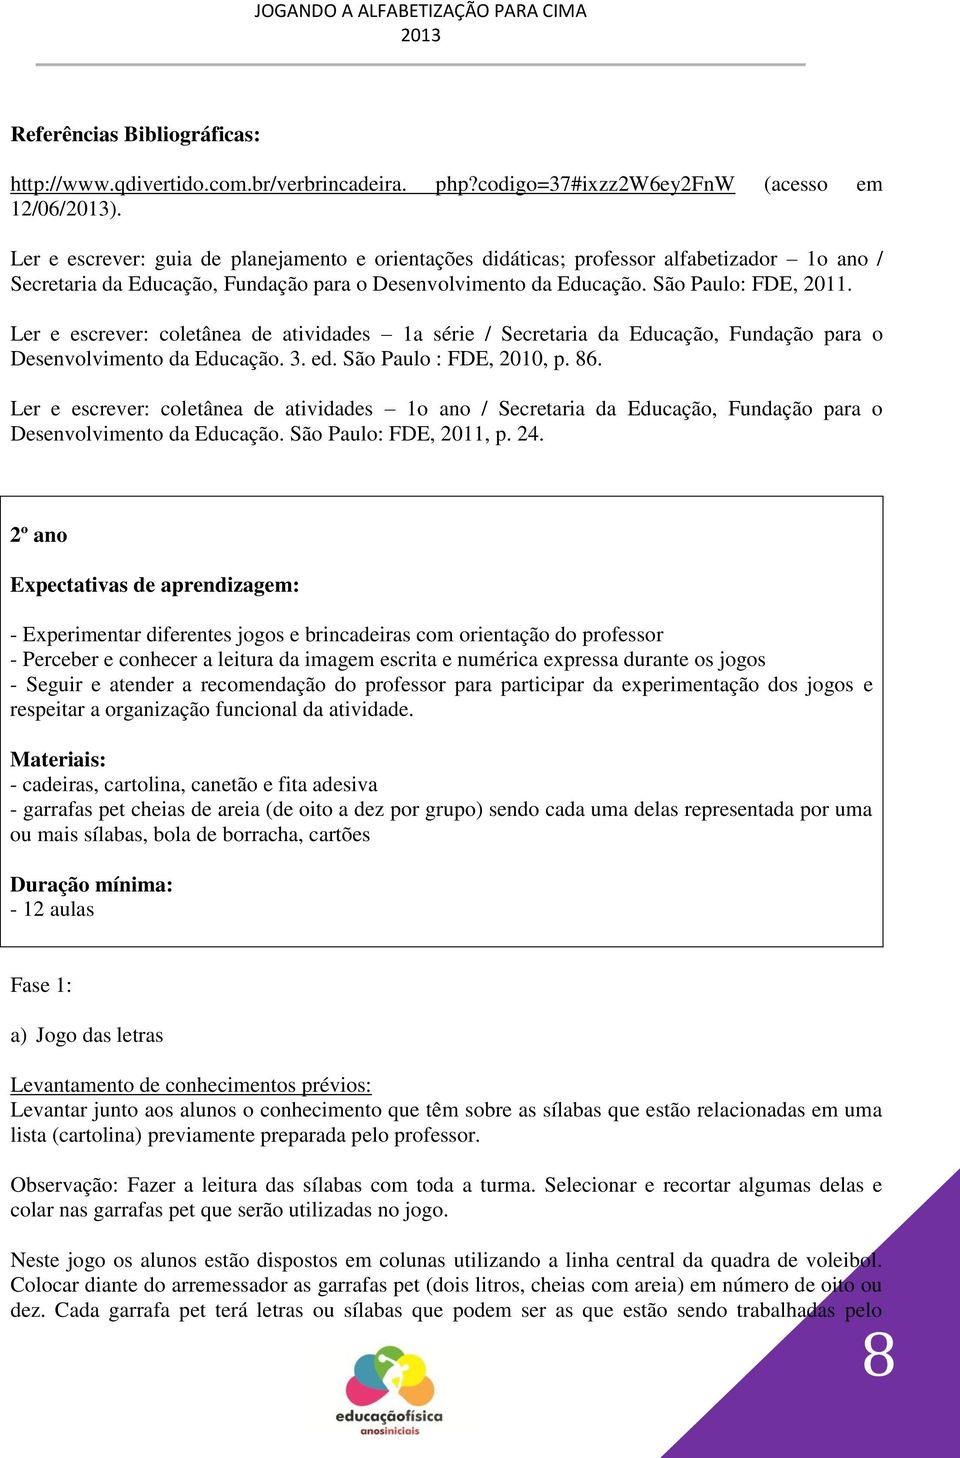 Ler e escrever: coletânea de atividades 1a série / Secretaria da Educação, Fundação para o Desenvolvimento da Educação. 3. ed. São Paulo : FDE, 2010, p. 86.